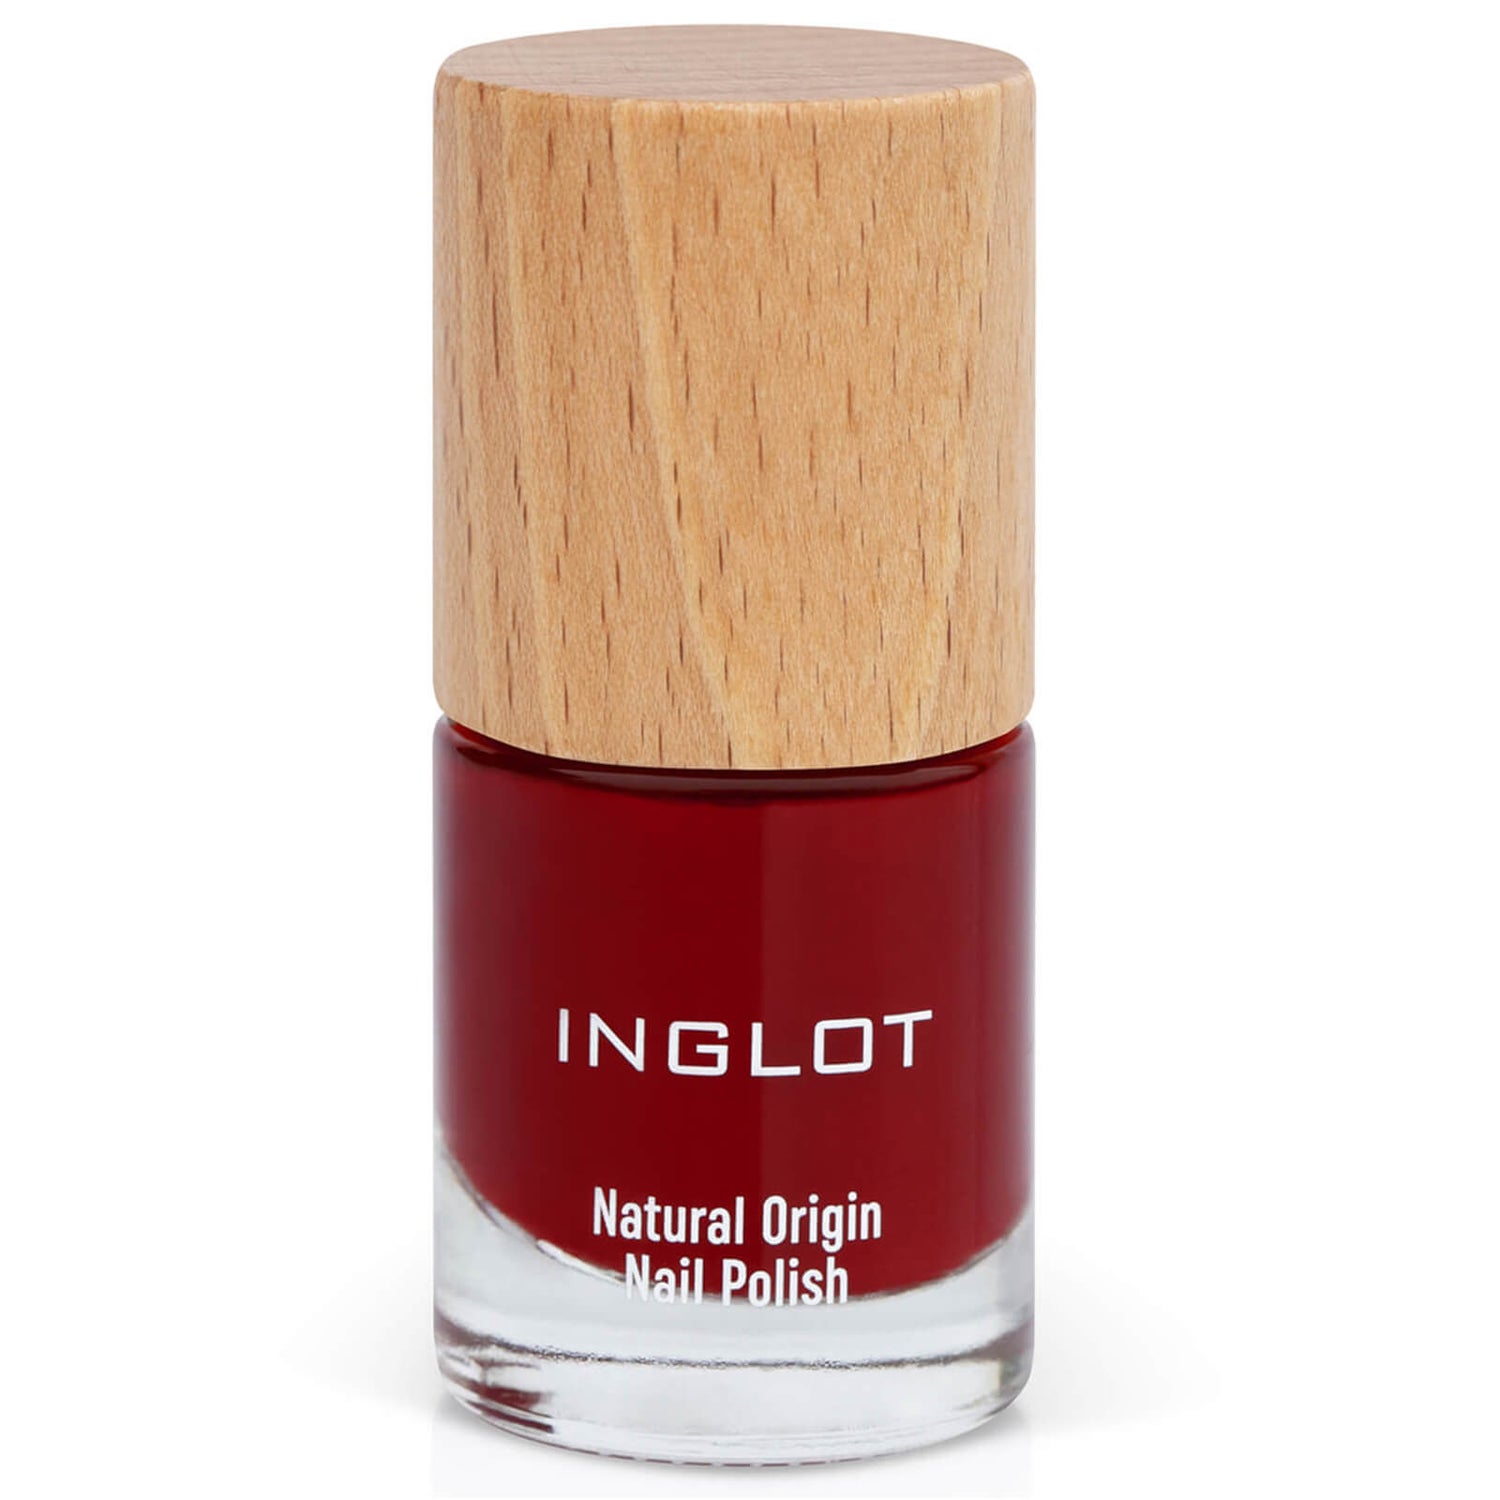 Inglot Natural Origin Nail Polish - Summer Wine 010